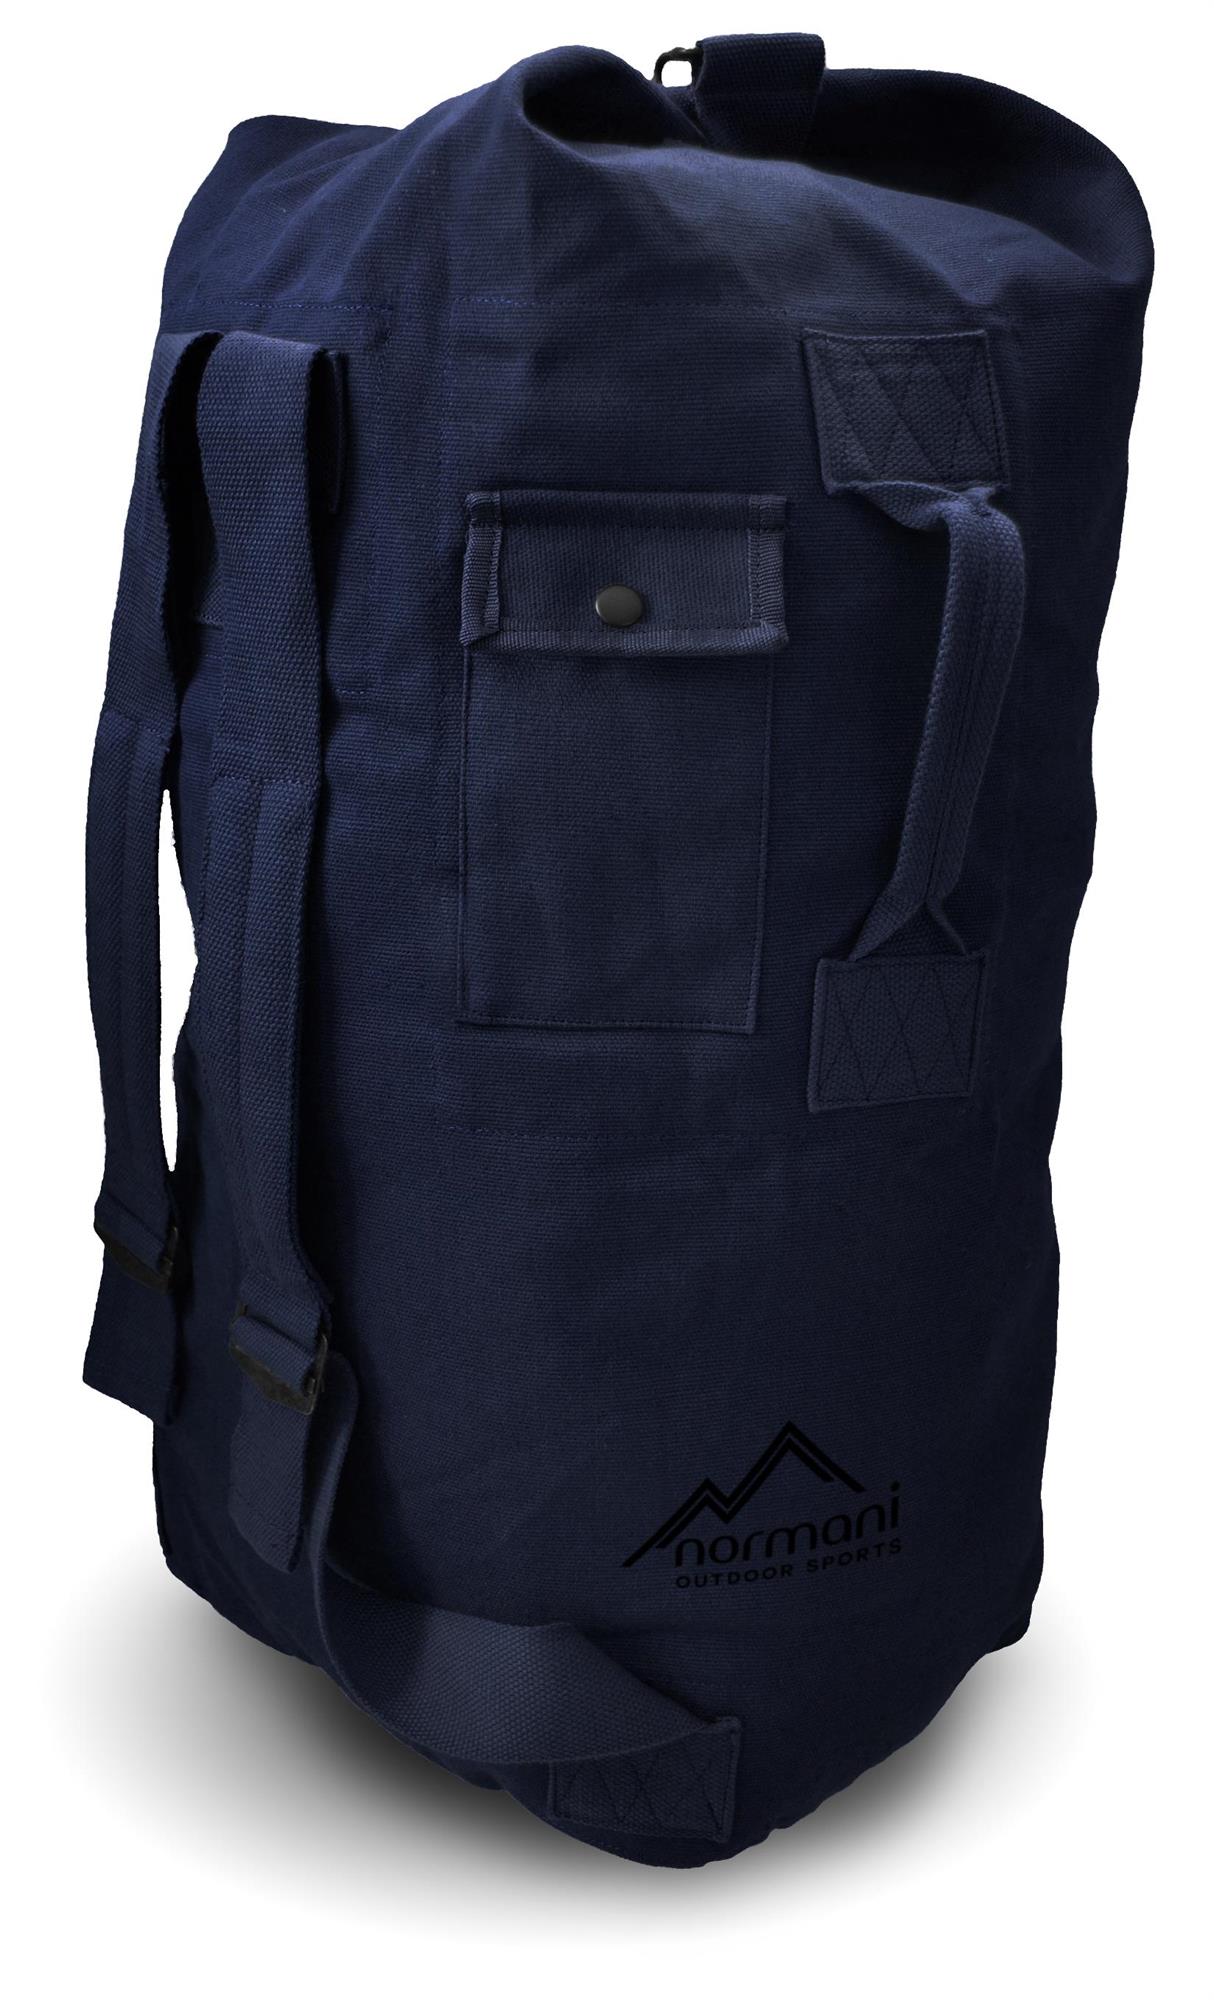 Seesack Canvas Reise-Rucksack mit Außentasche Duffle Bag Universal Tasche 